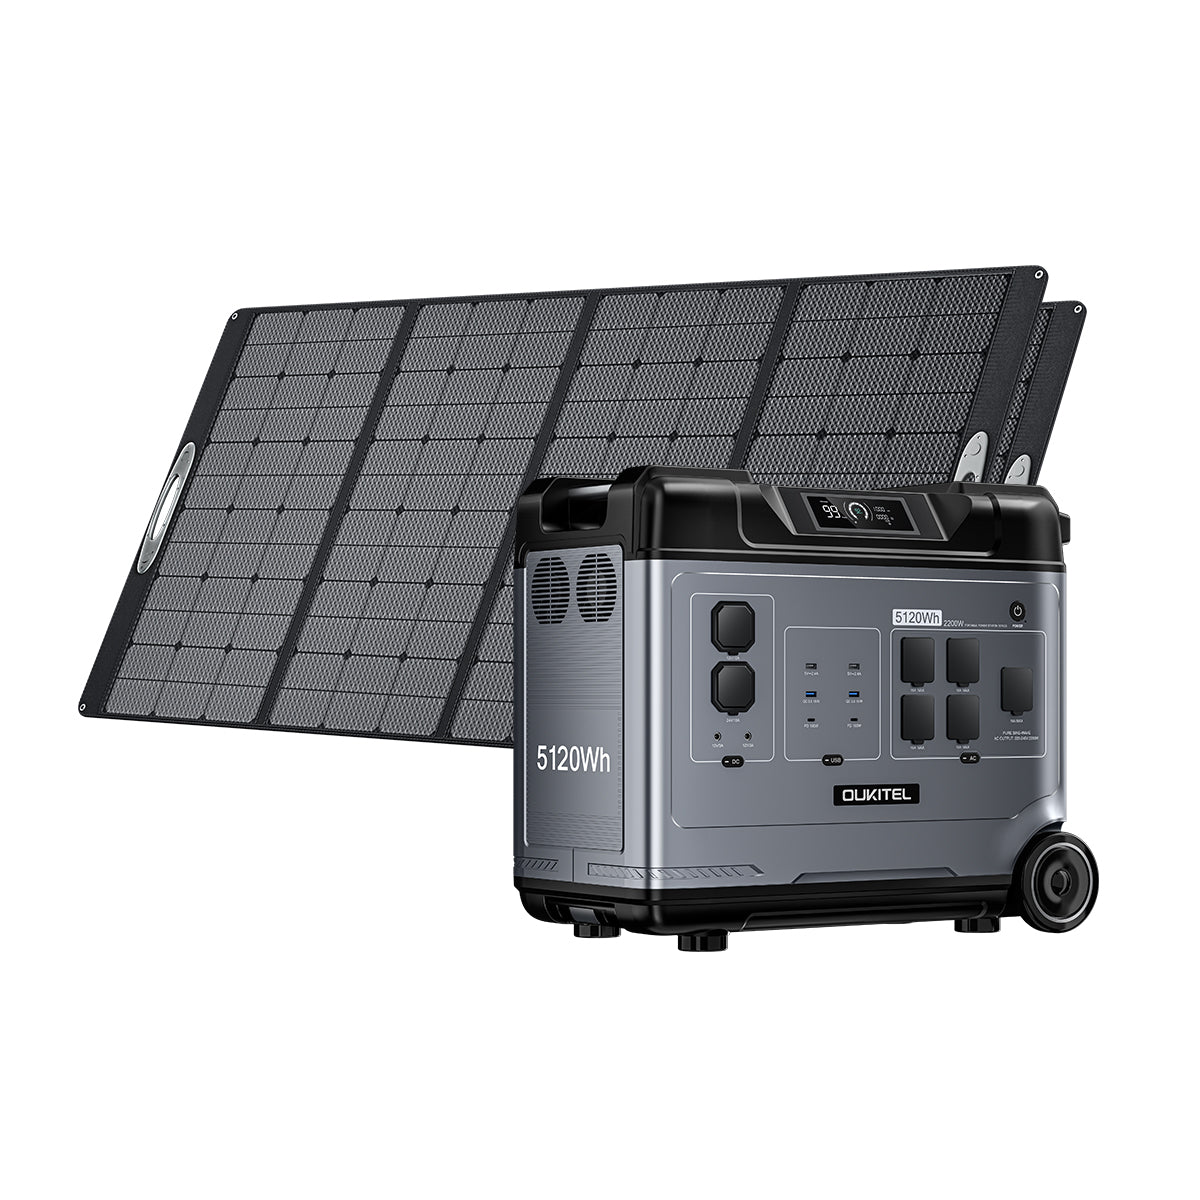 <tc>OUKITEL P5000 Solargenerator 2200W/5120Wh</tc>